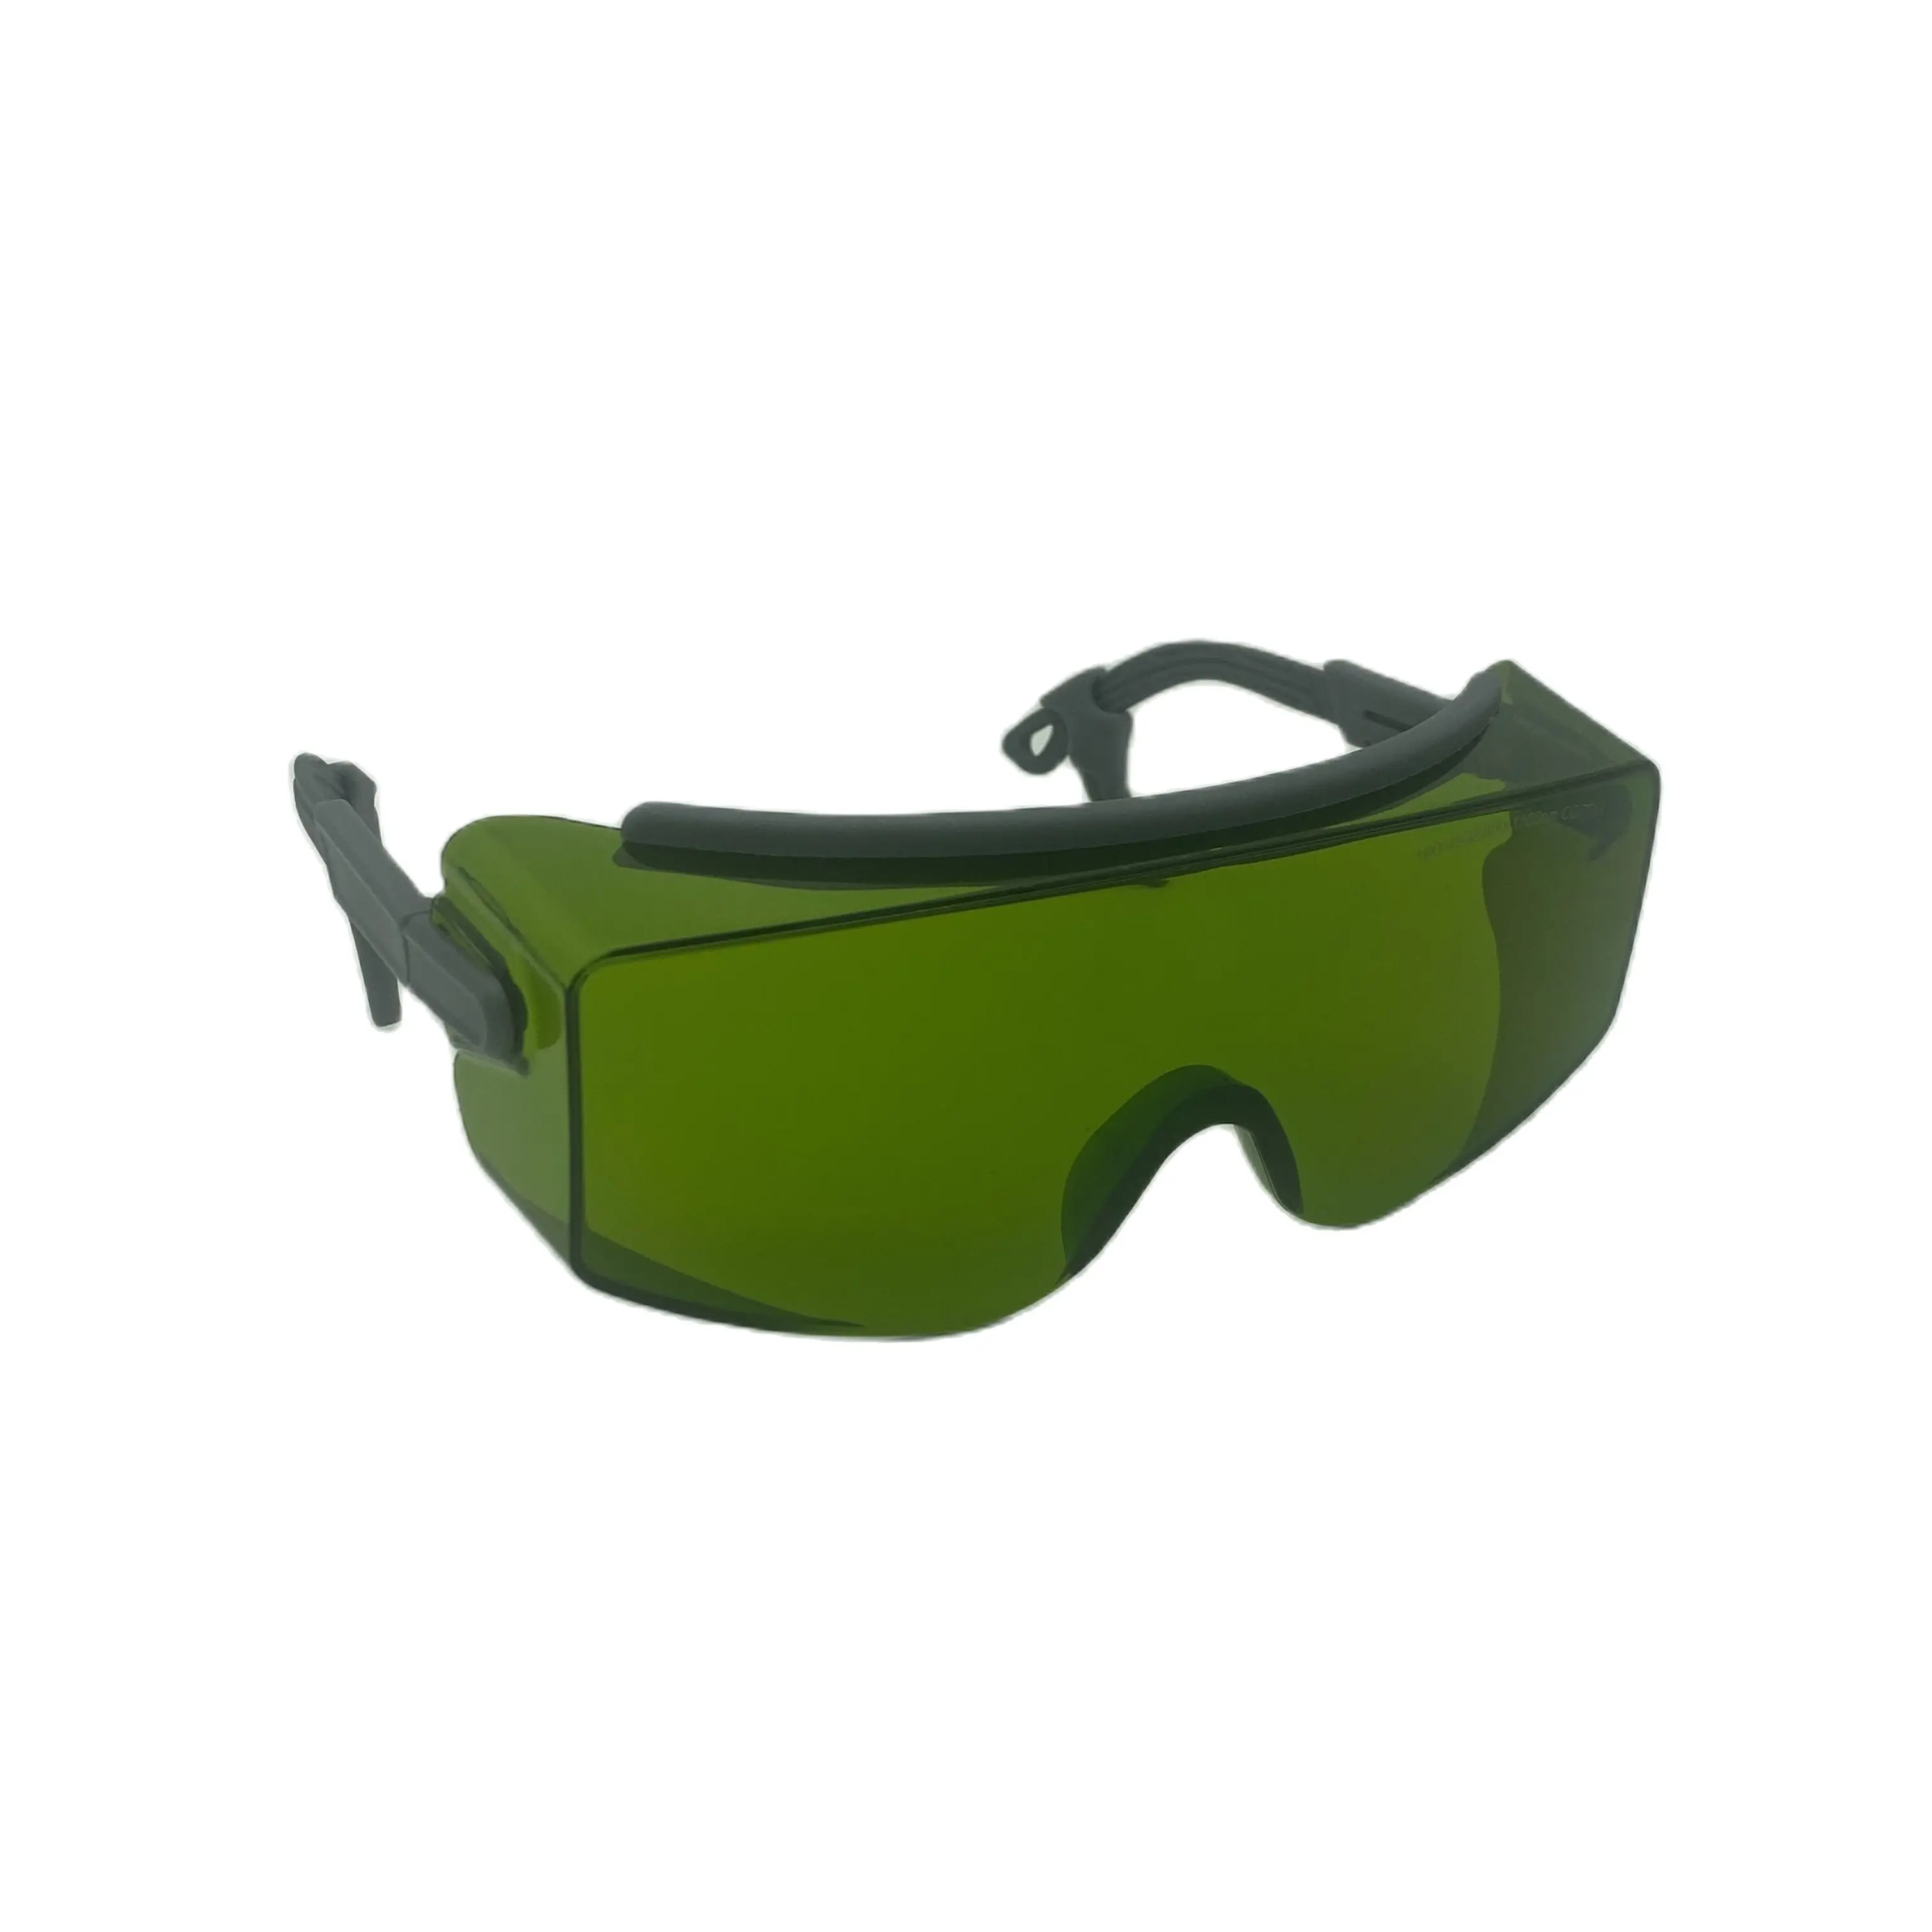 lsg-15-laser-safety-glasses-for-alex-diode-yag-lasers-adding-black-hard-case-cloth